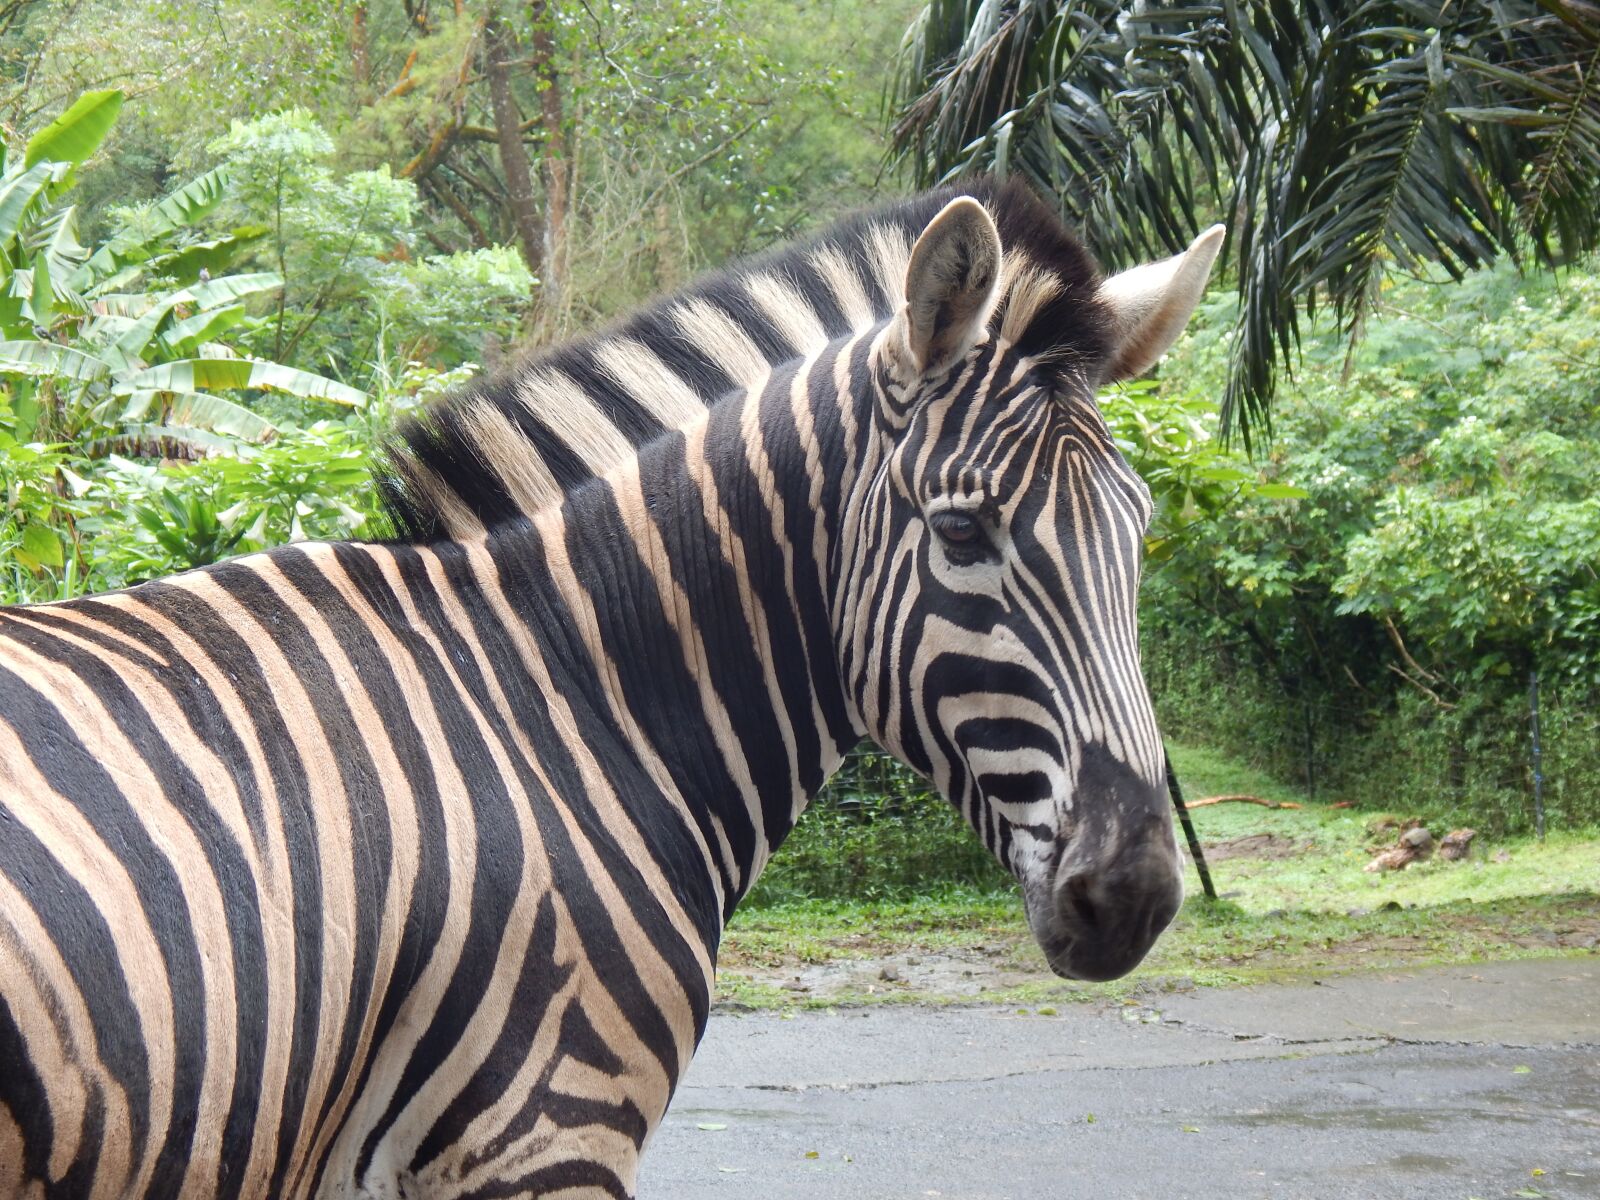 Nikon Coolpix L830 sample photo. Zebra, striped, mammal photography